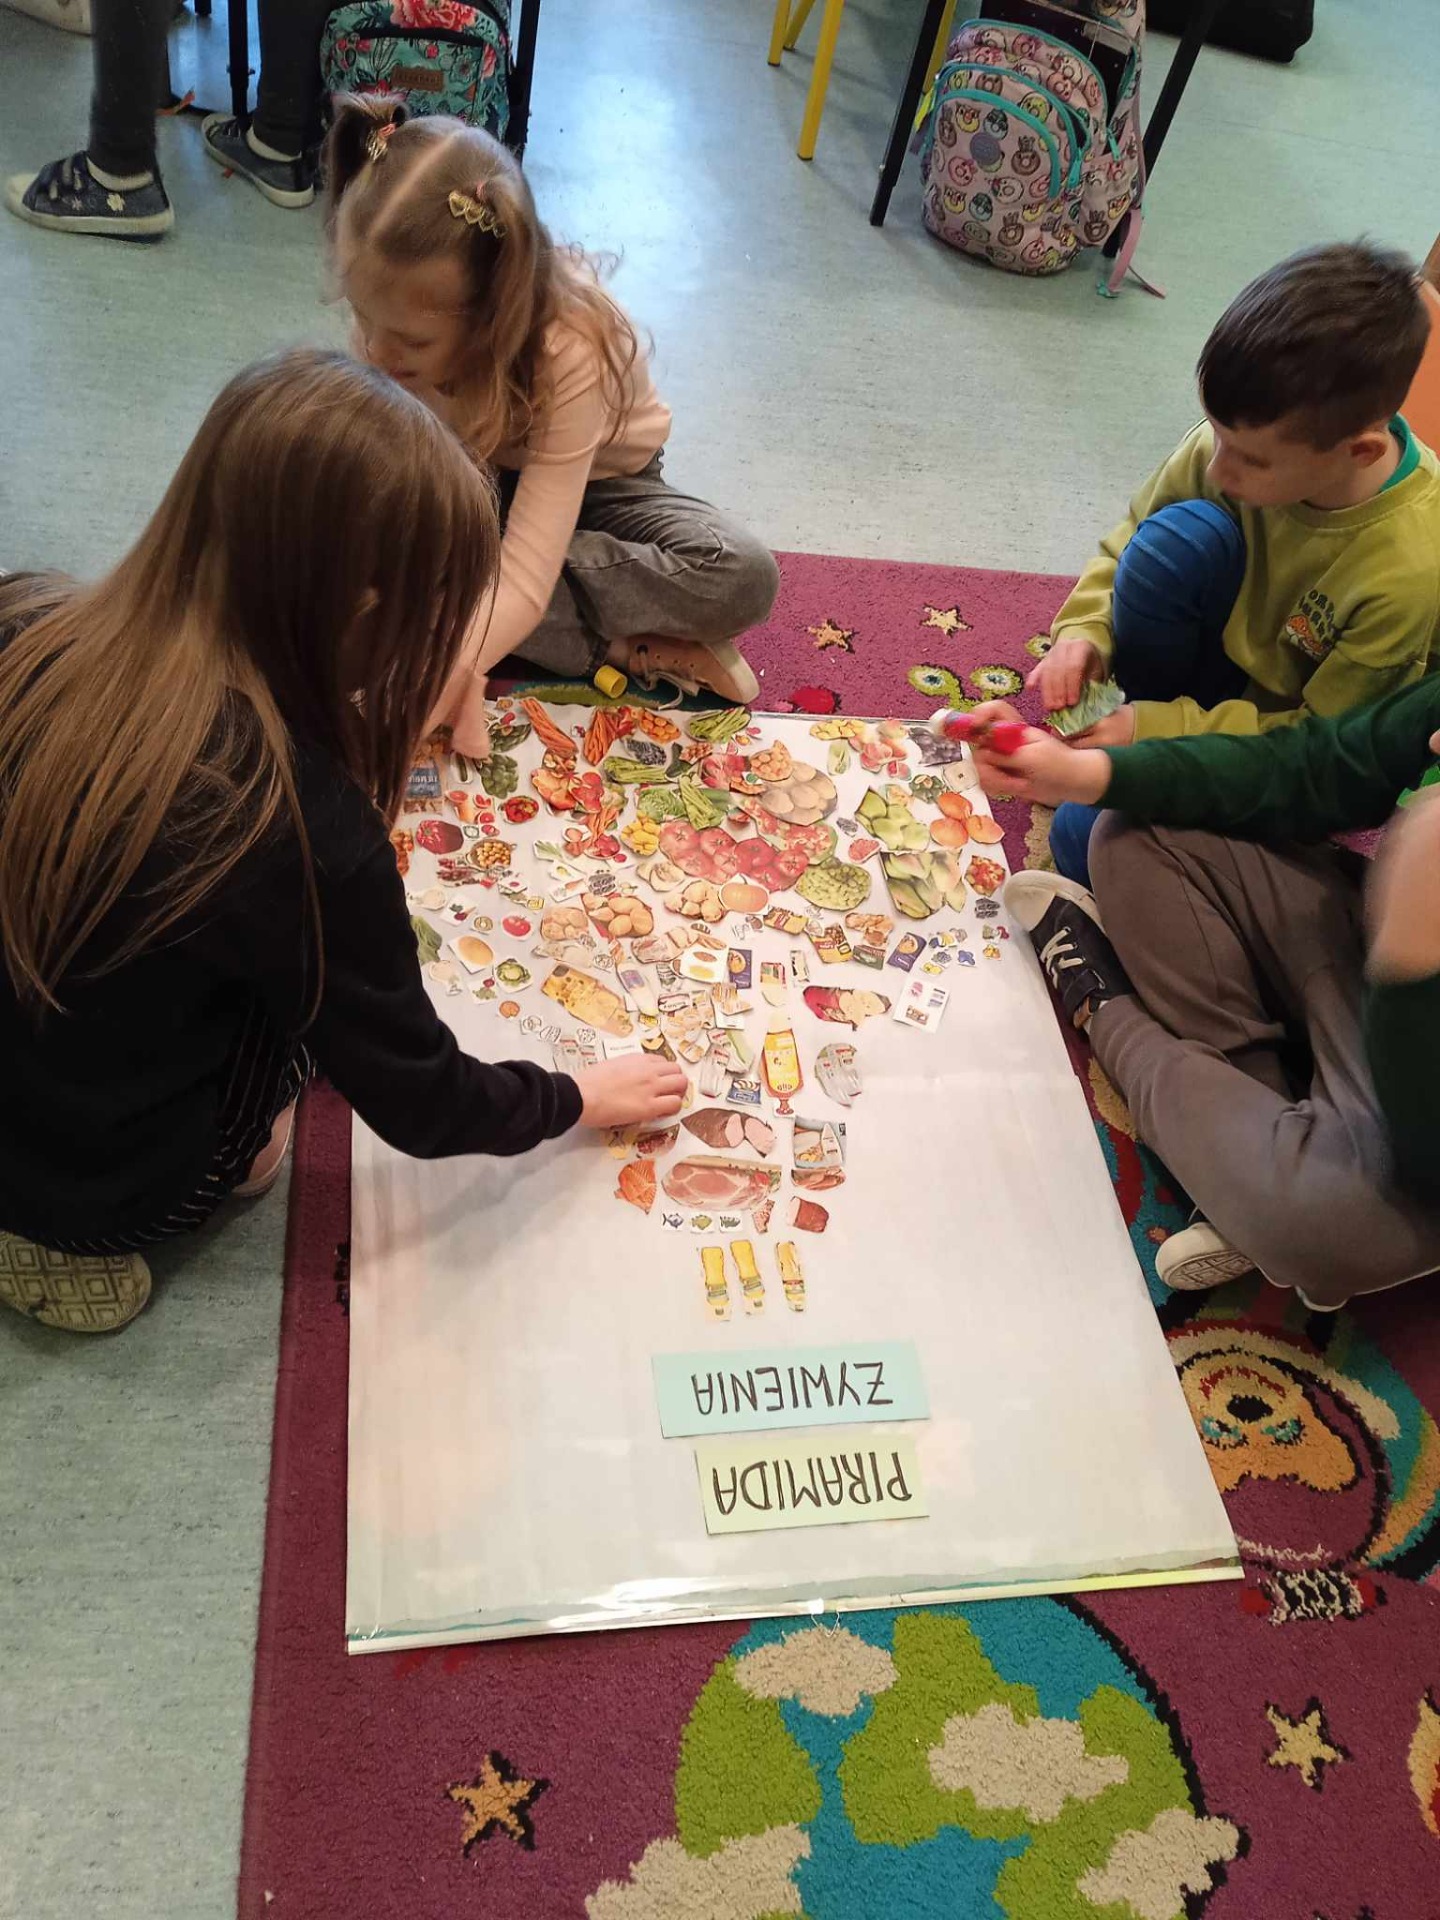 Uczniowie układają piramidę żywieniową.